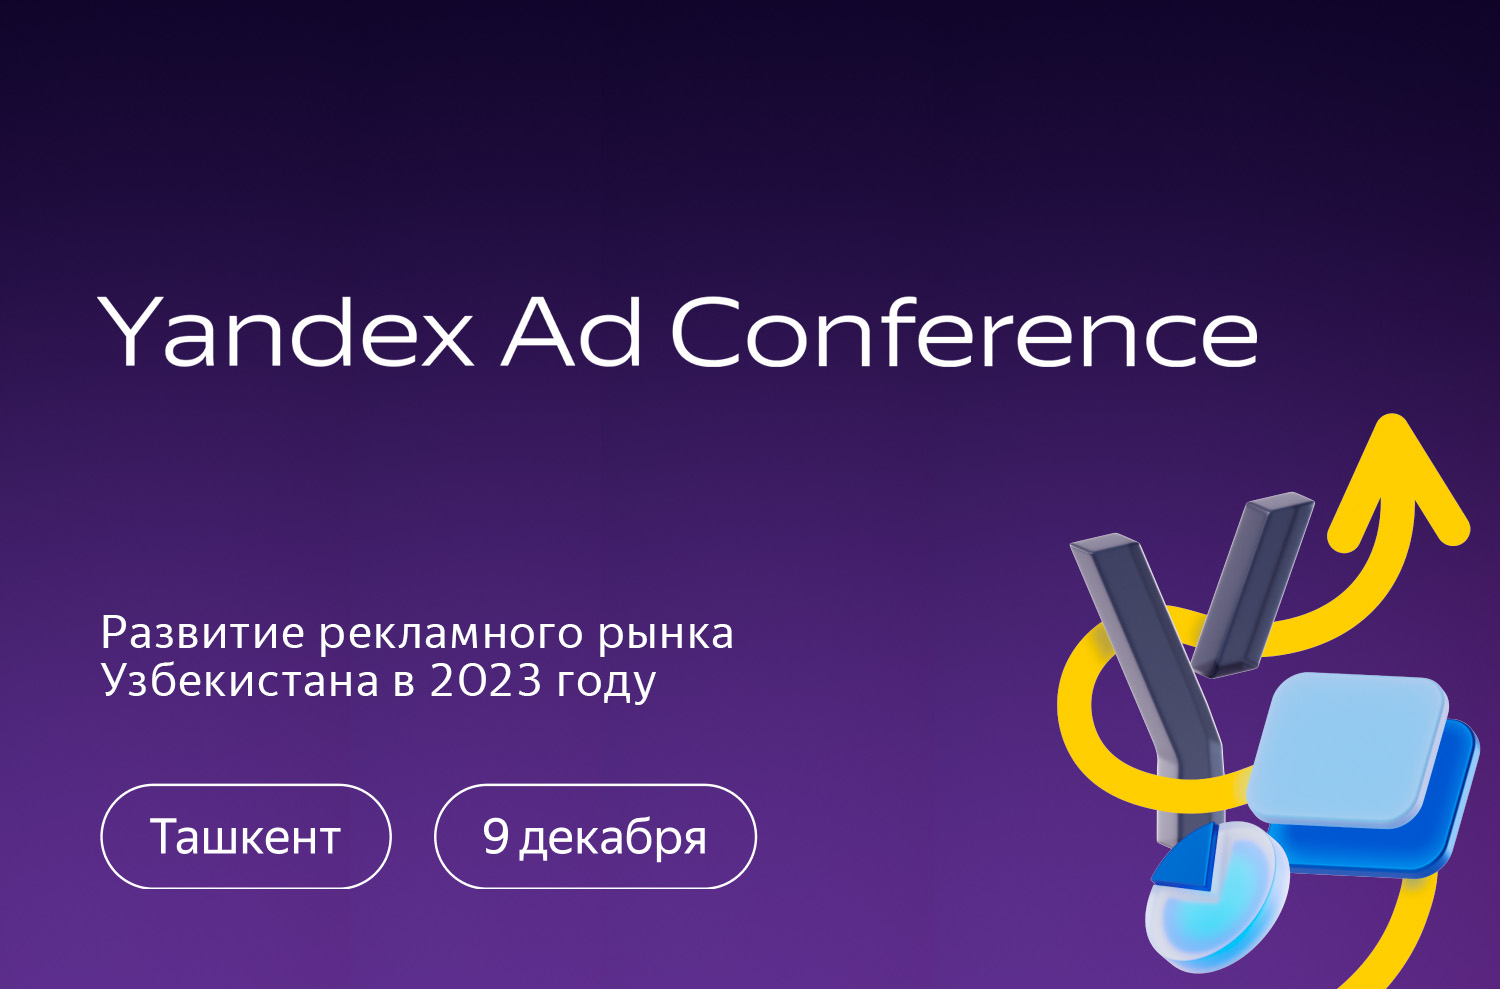 В Ташкенте пройдет Yandex Ad Conference 